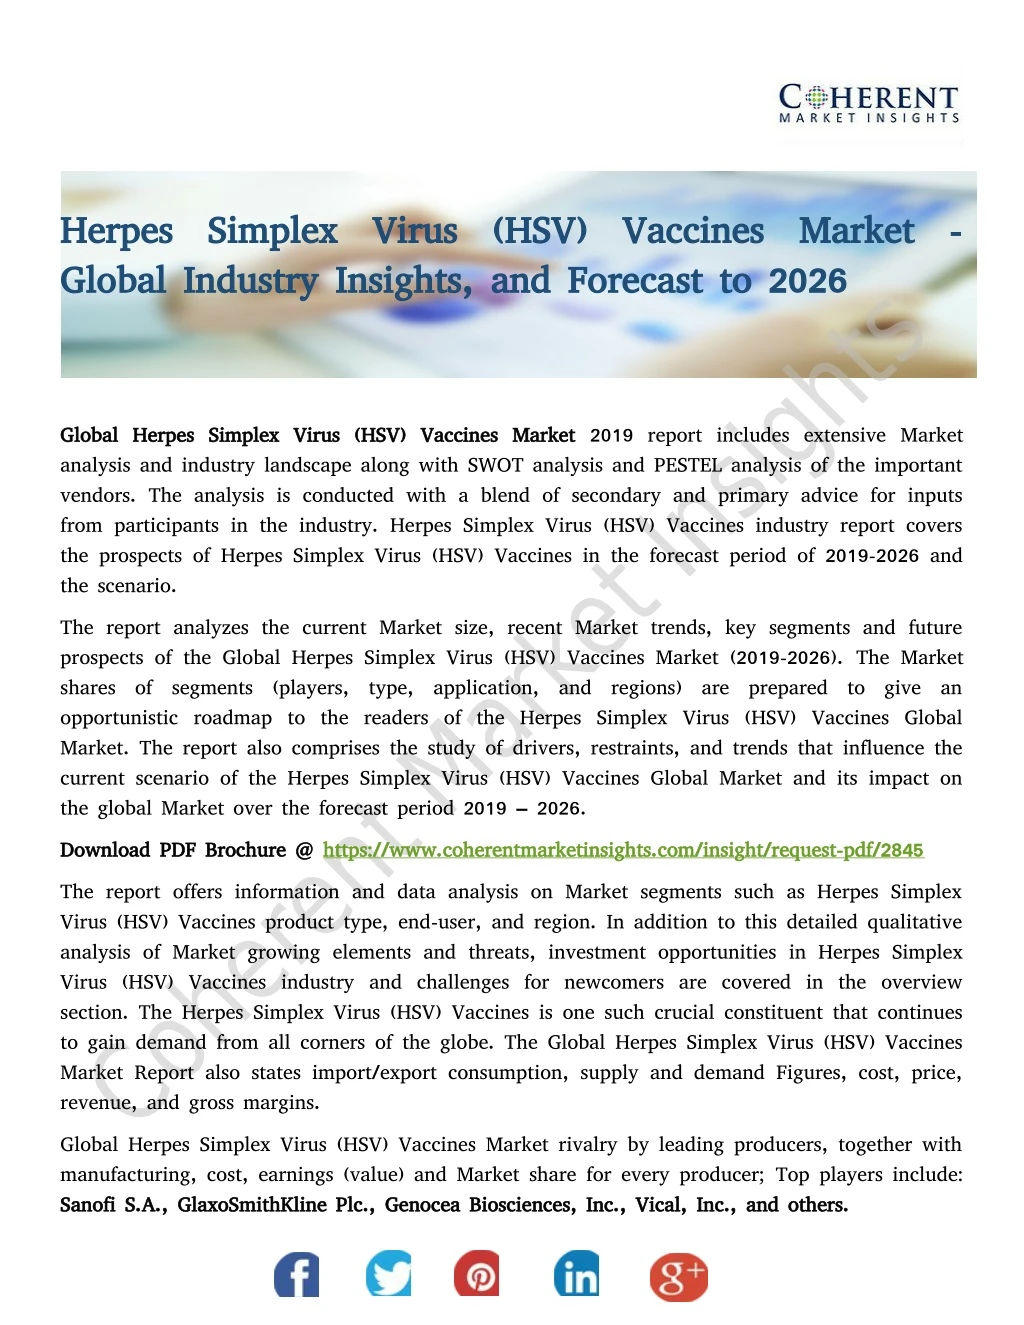 herpes simplex virus hsv vaccines market herpes